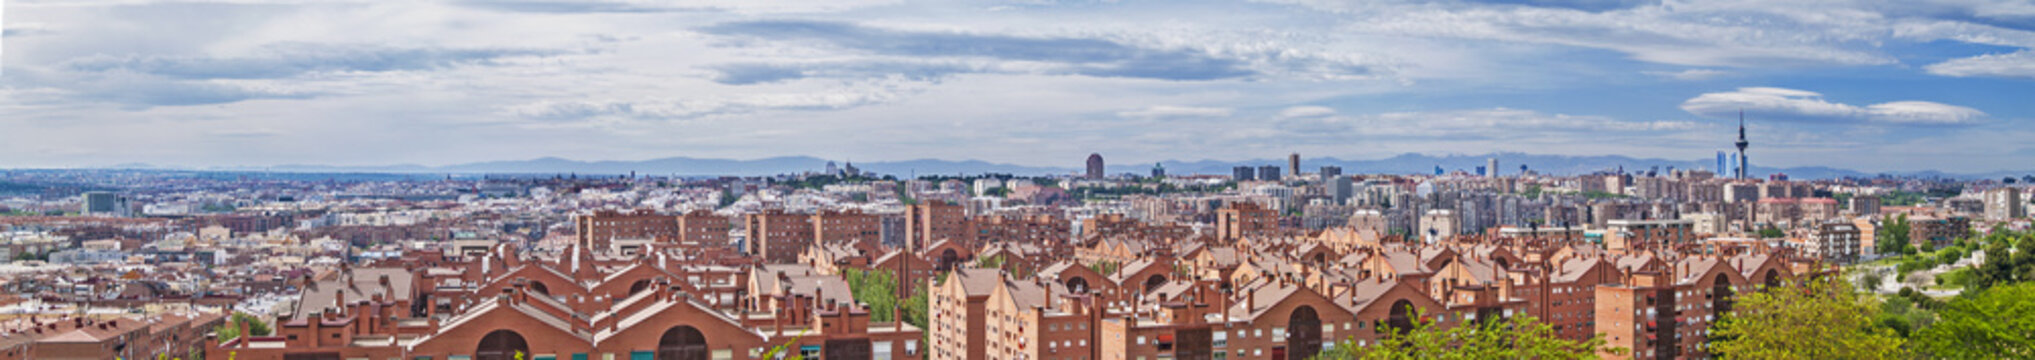 Madrid skyline panorama